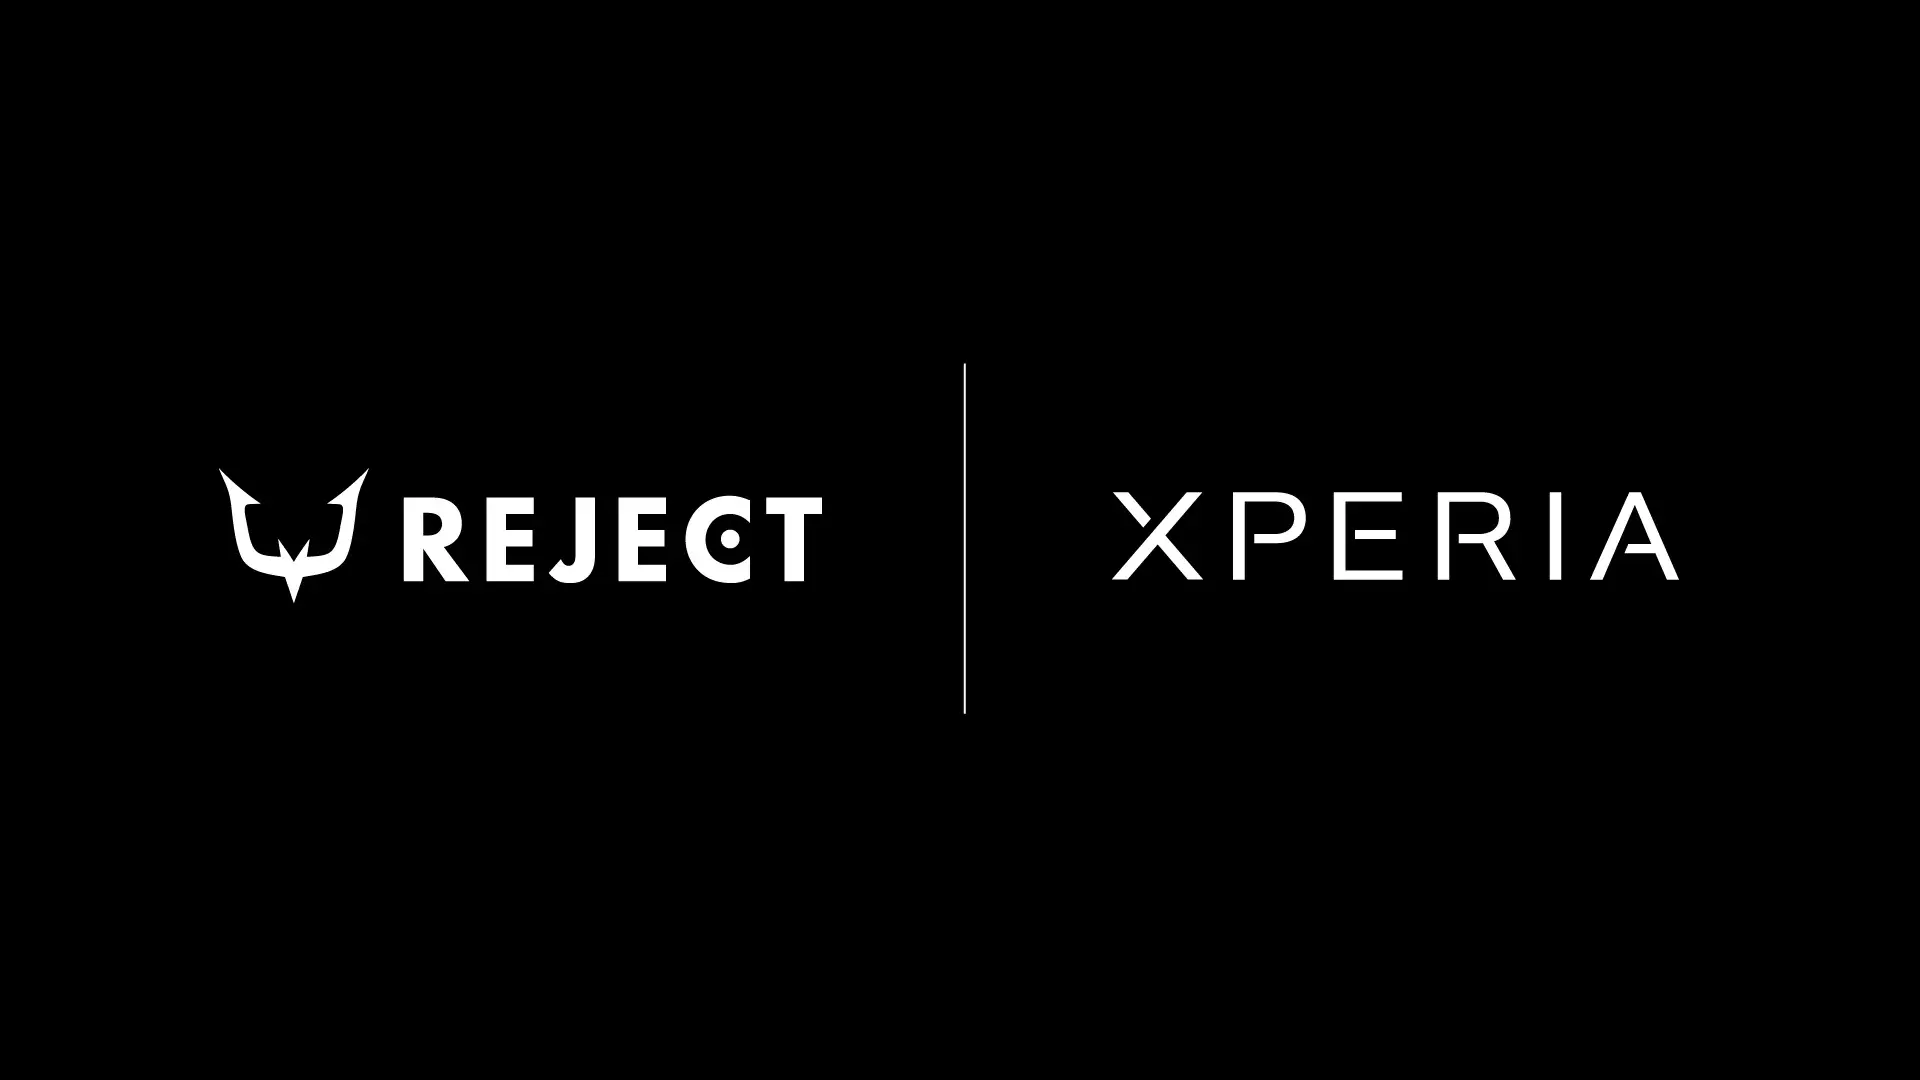 ソニー製Xperia™スマートフォンのプロモーション活動におけるパートナーシップを発表